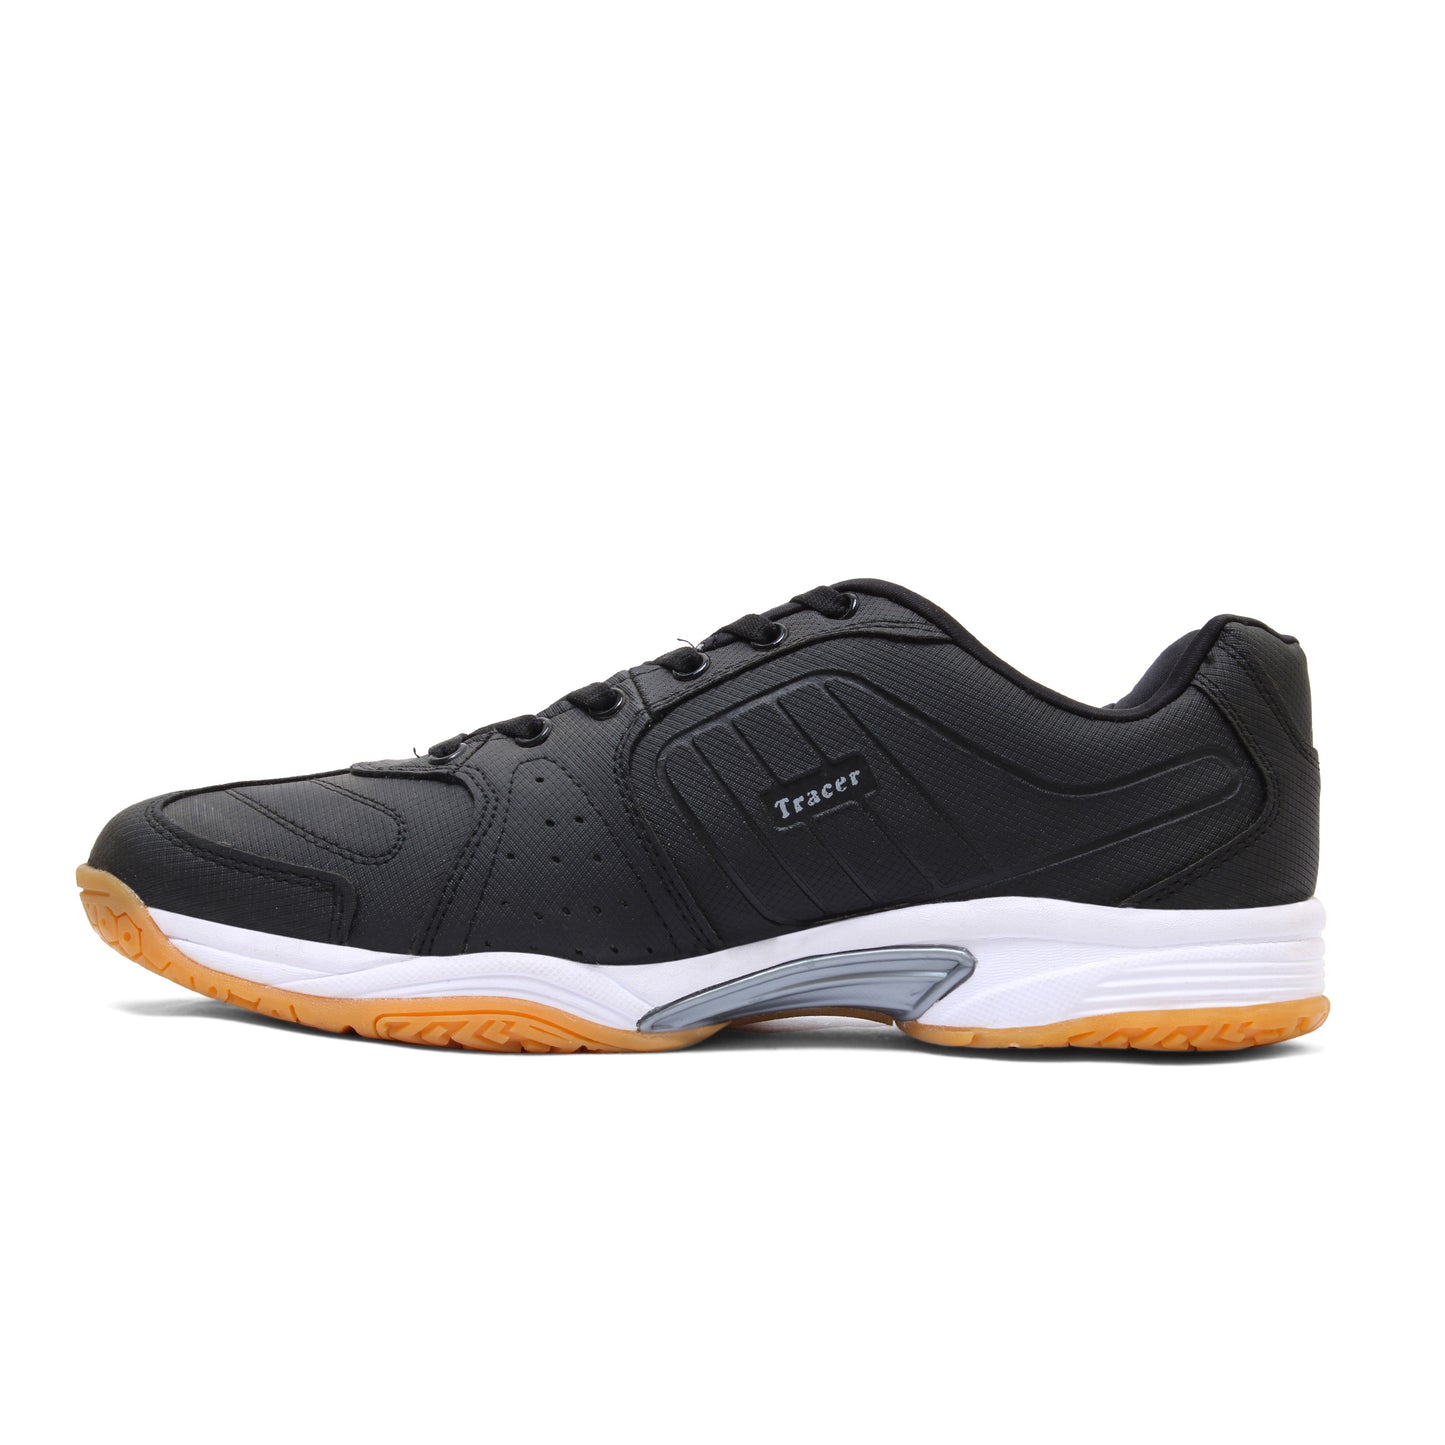 Tennis Shoes for Men Black